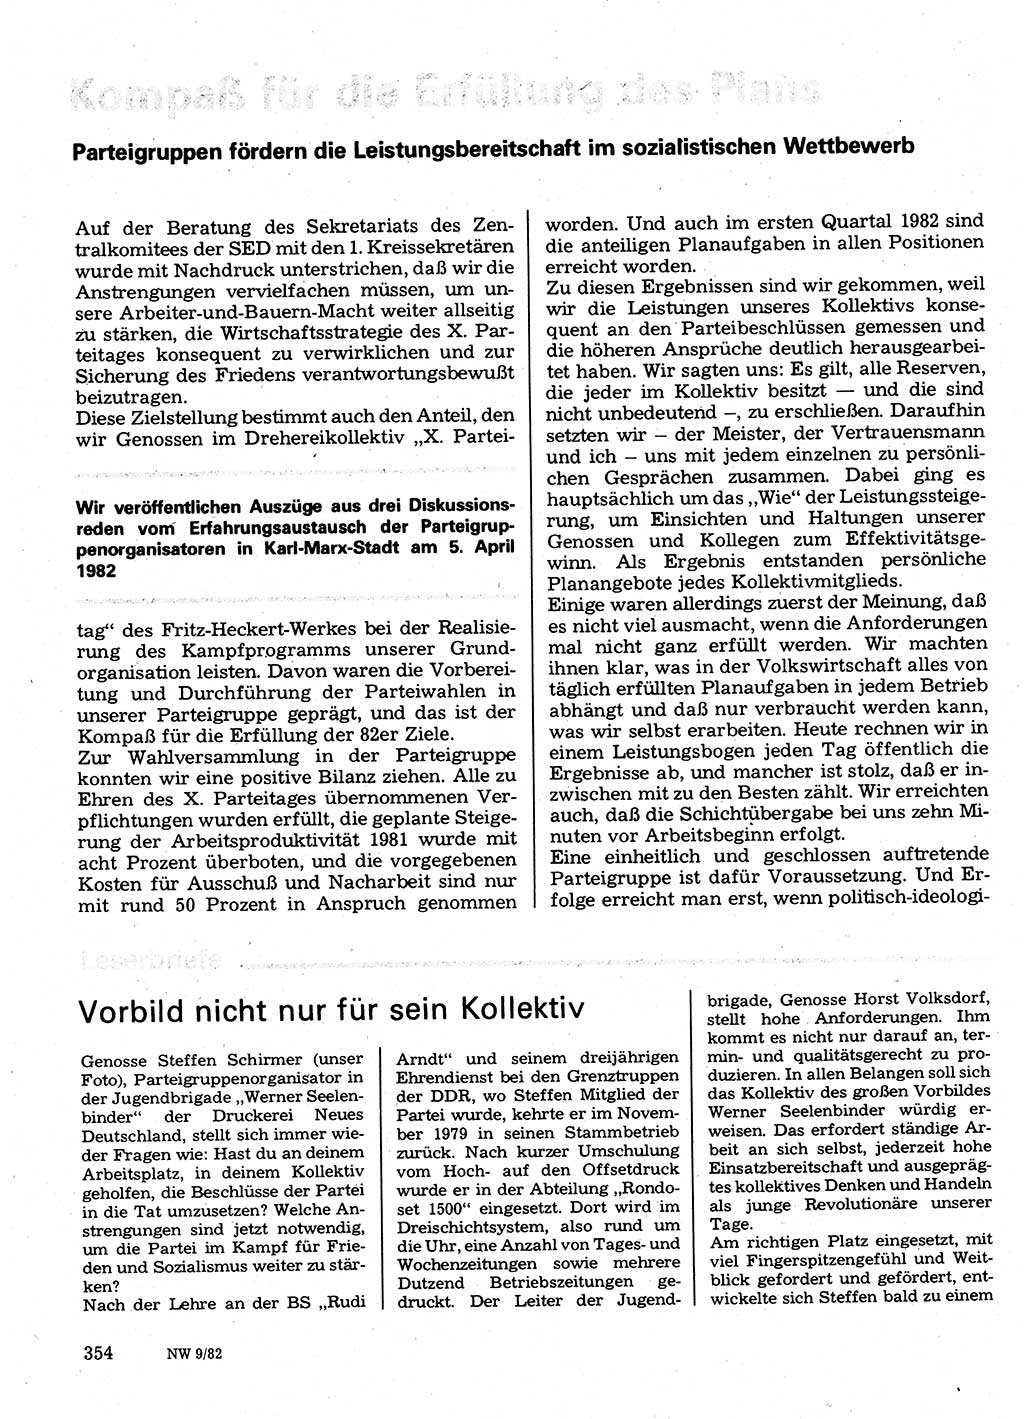 Neuer Weg (NW), Organ des Zentralkomitees (ZK) der SED (Sozialistische Einheitspartei Deutschlands) für Fragen des Parteilebens, 37. Jahrgang [Deutsche Demokratische Republik (DDR)] 1982, Seite 354 (NW ZK SED DDR 1982, S. 354)